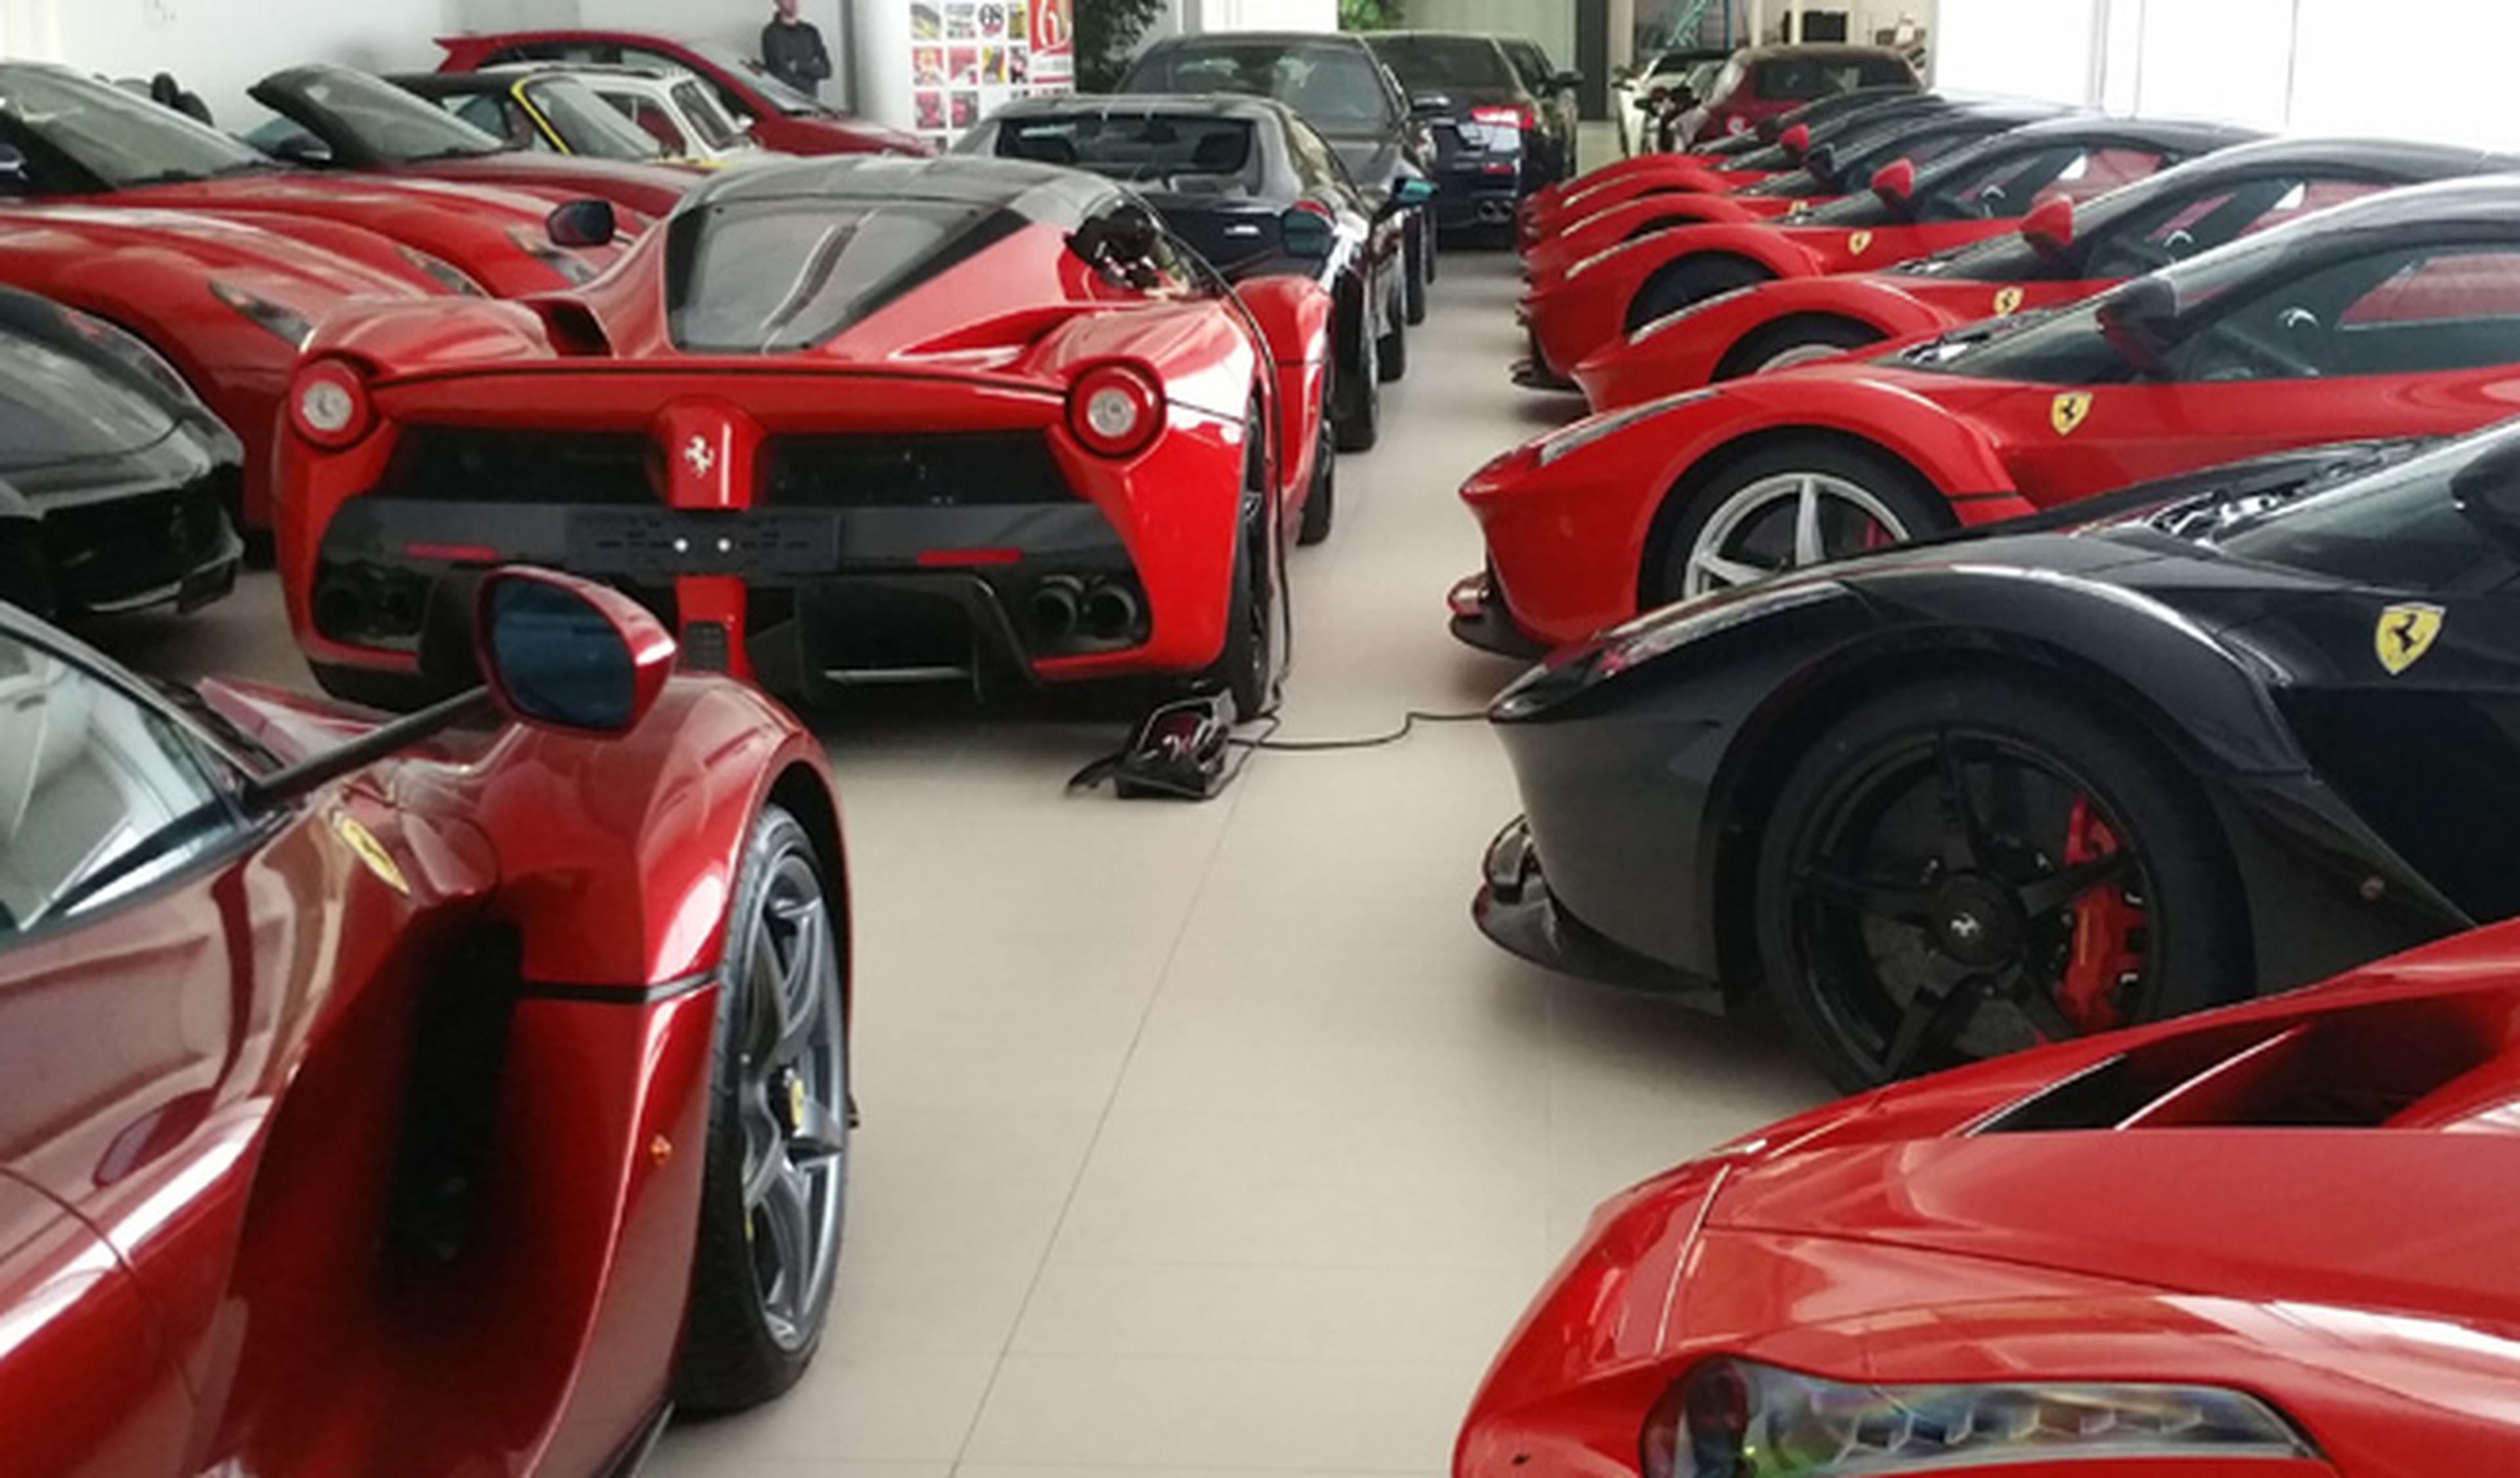 Vídeo: nunca verás tantos Ferrari LaFerrari juntos